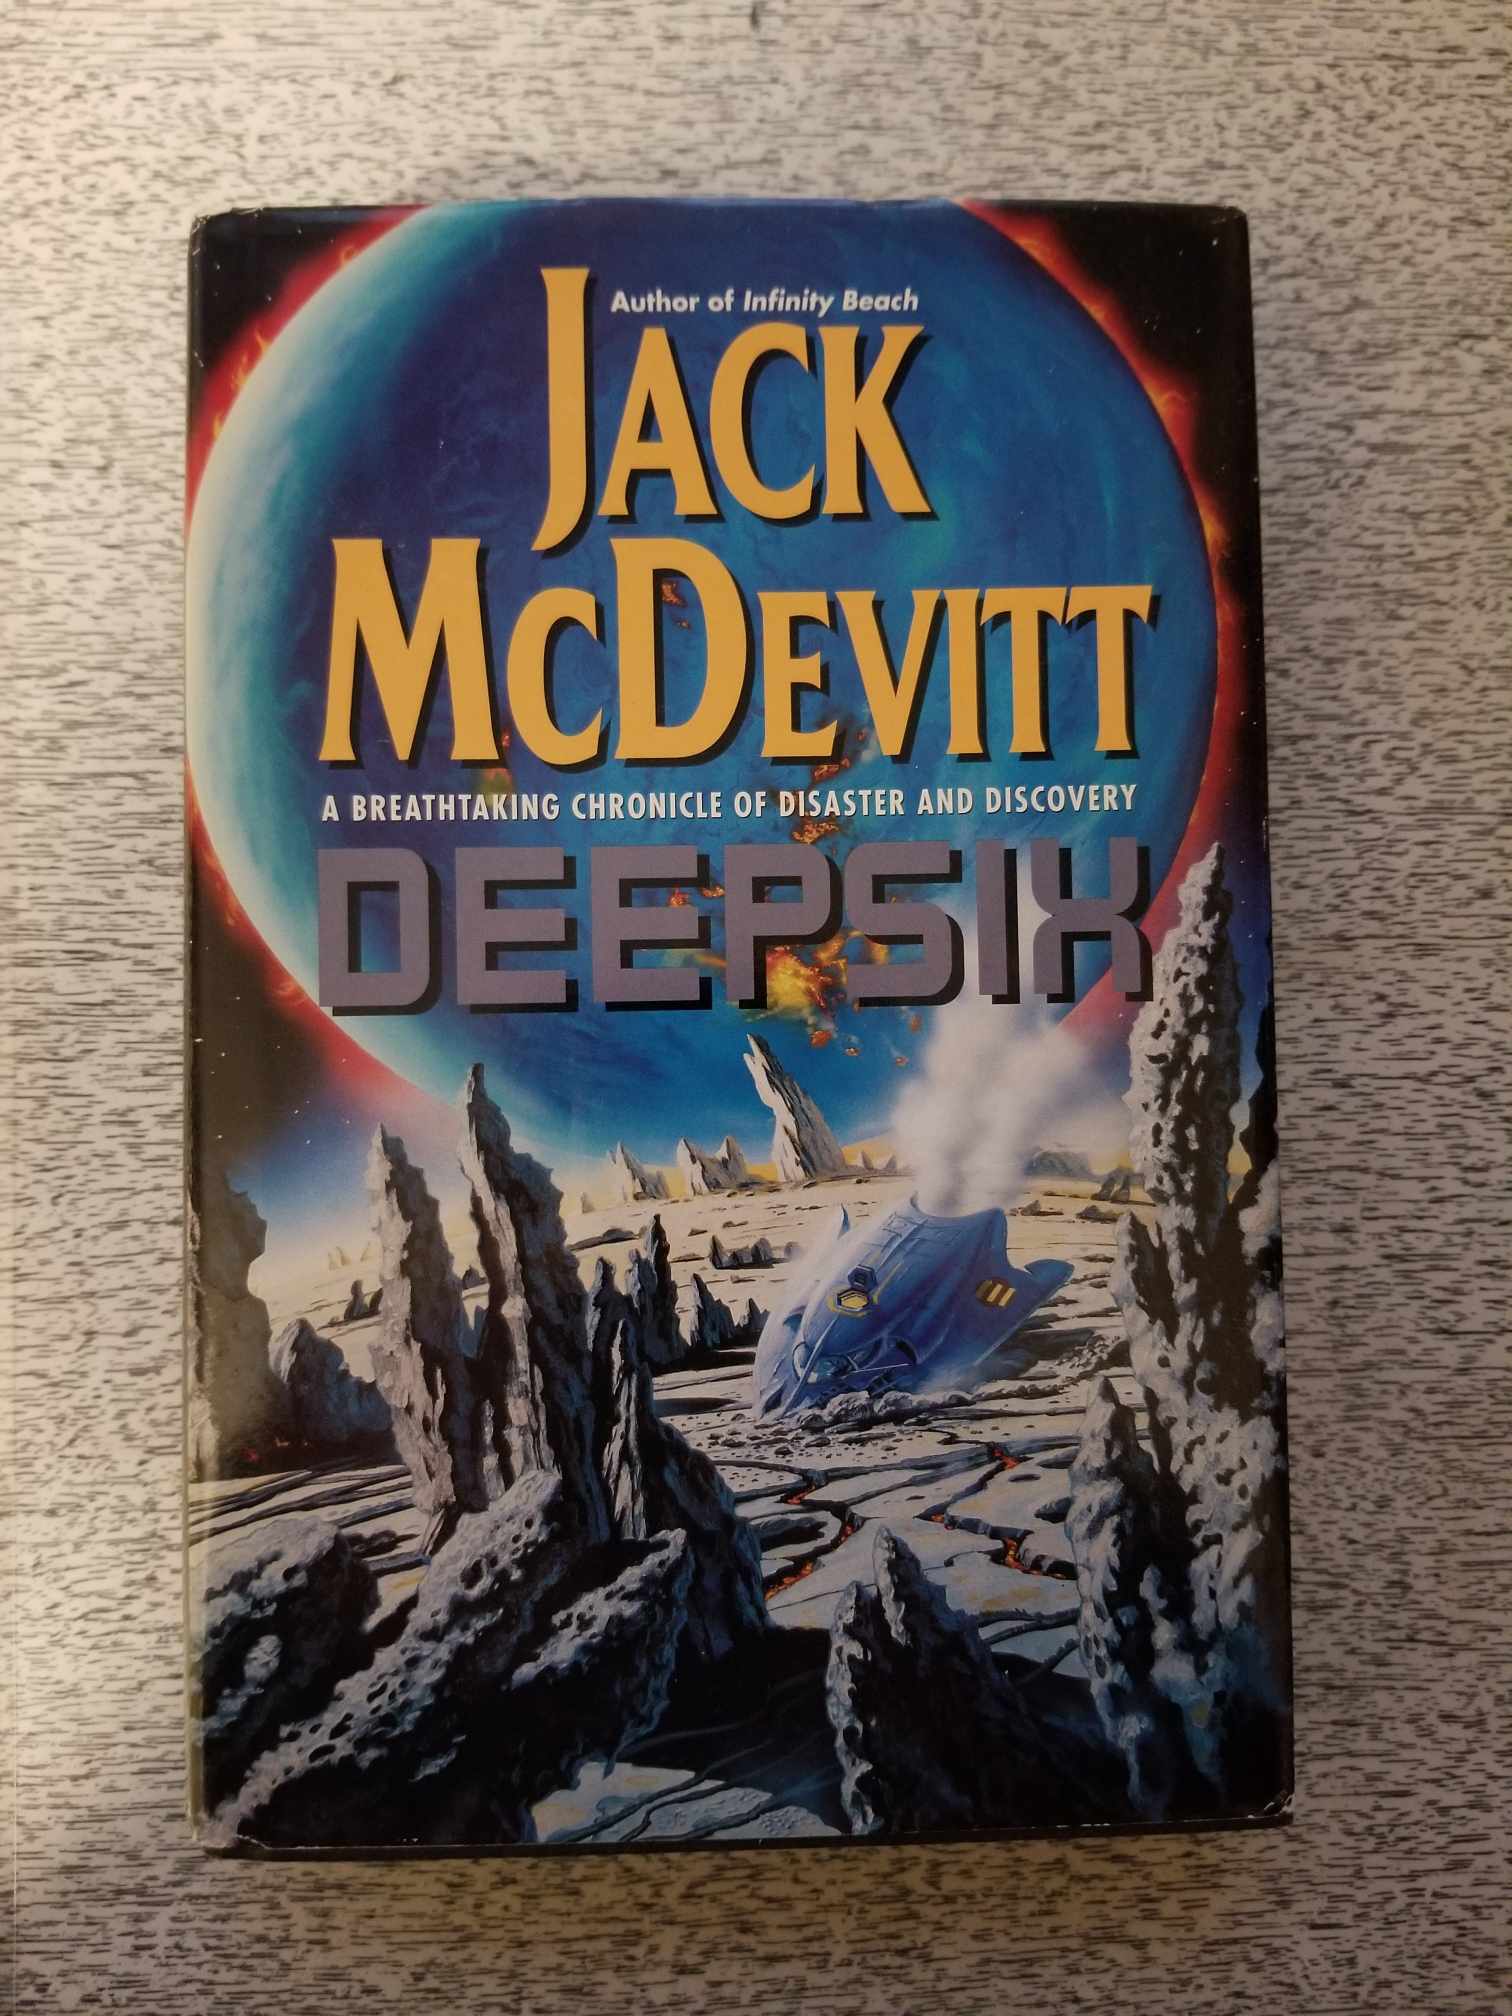 Deepsix by Jack McDevitt